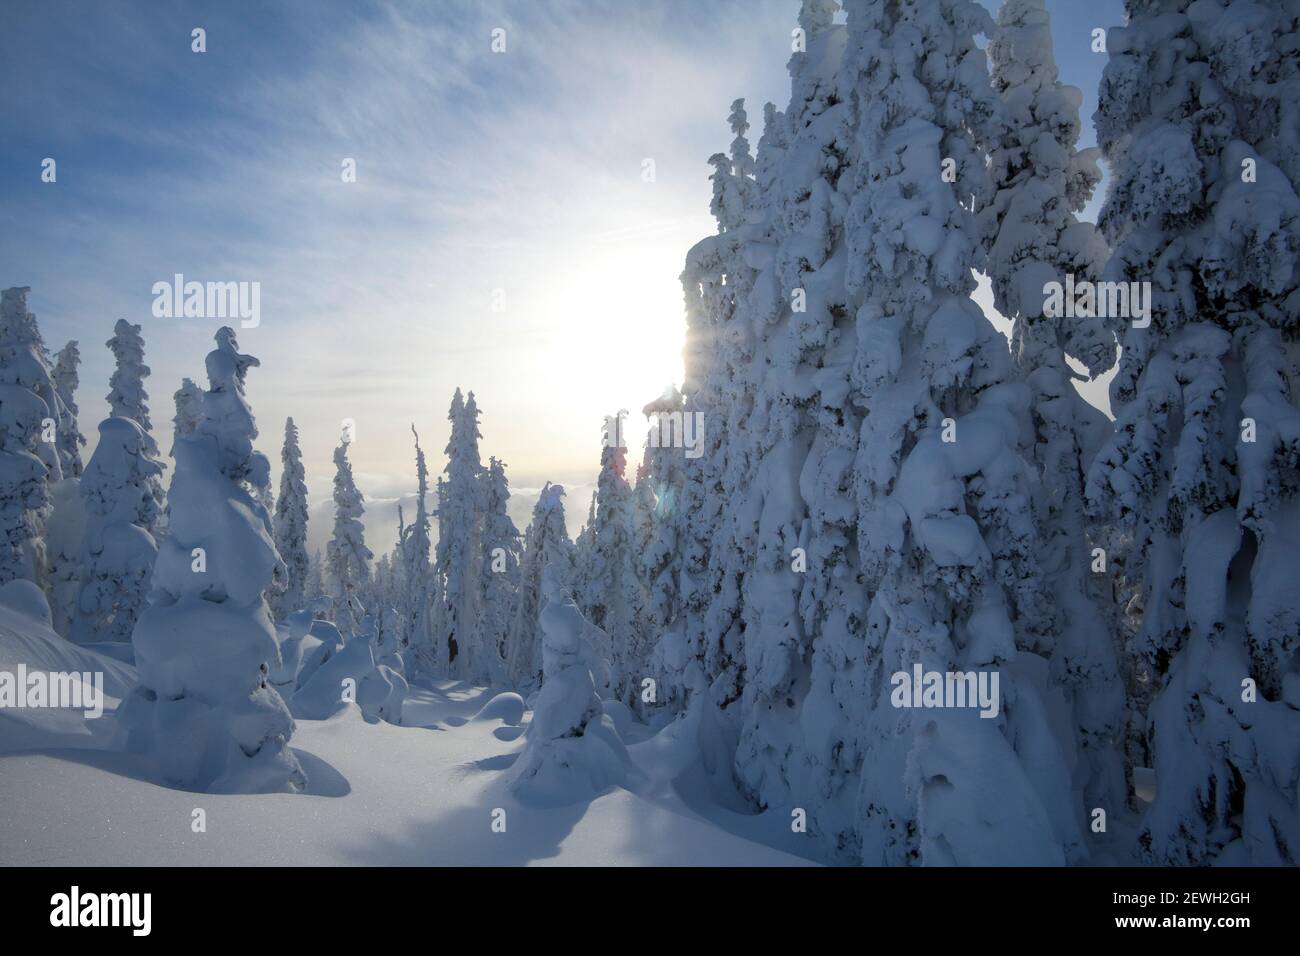 Neige d'hiver, dérives profondes et pins couverts de neige Banque D'Images